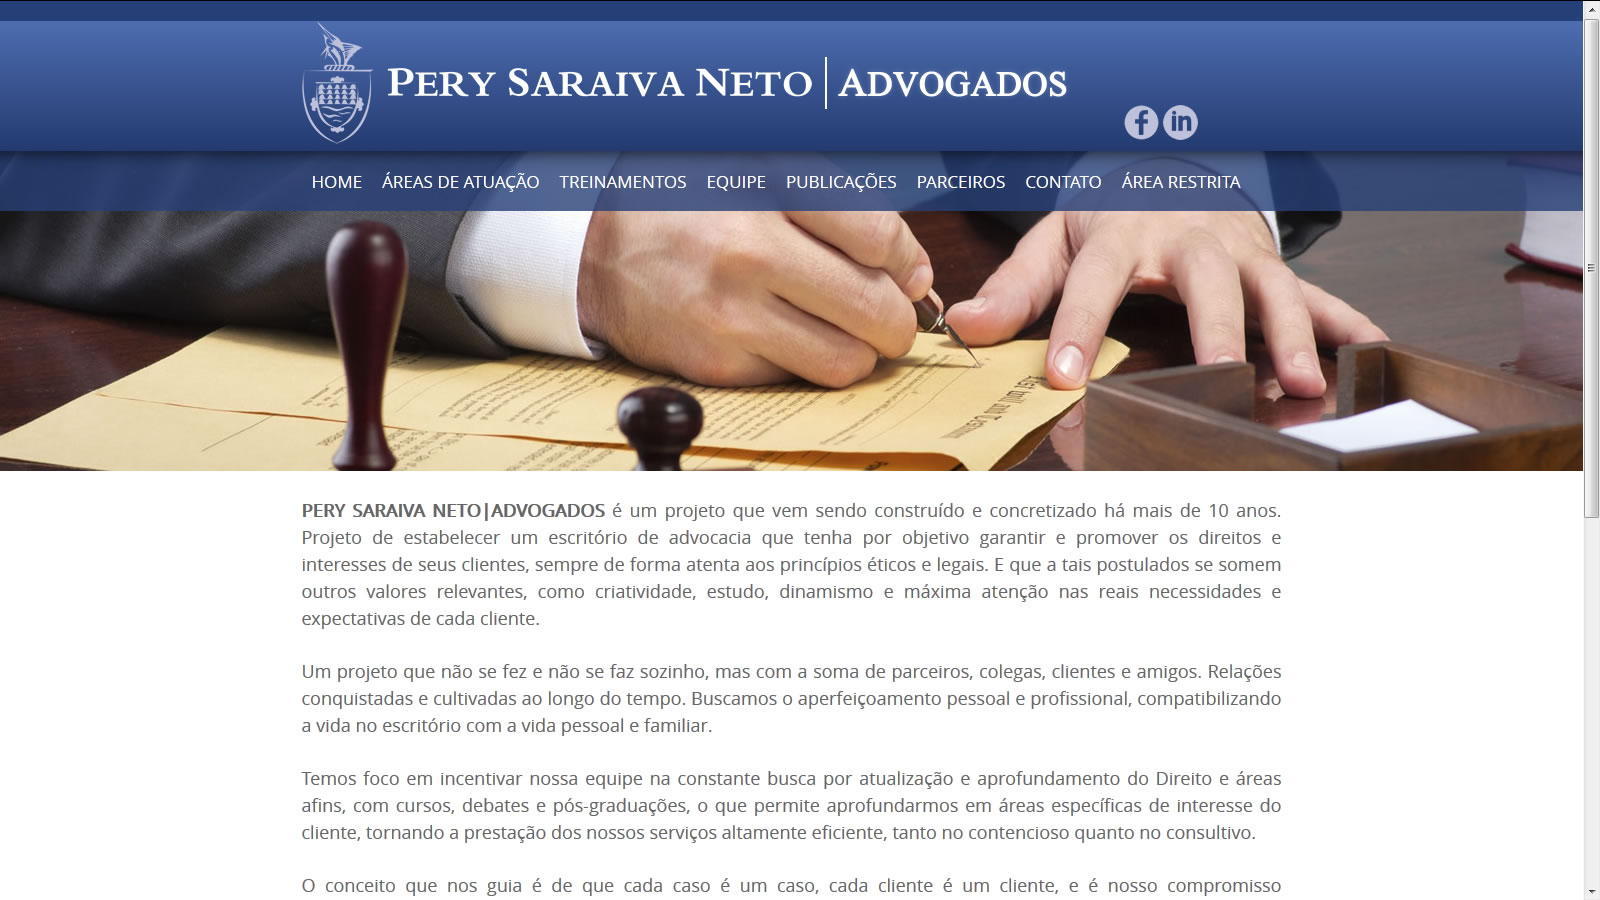 Pery Saraiva Neto